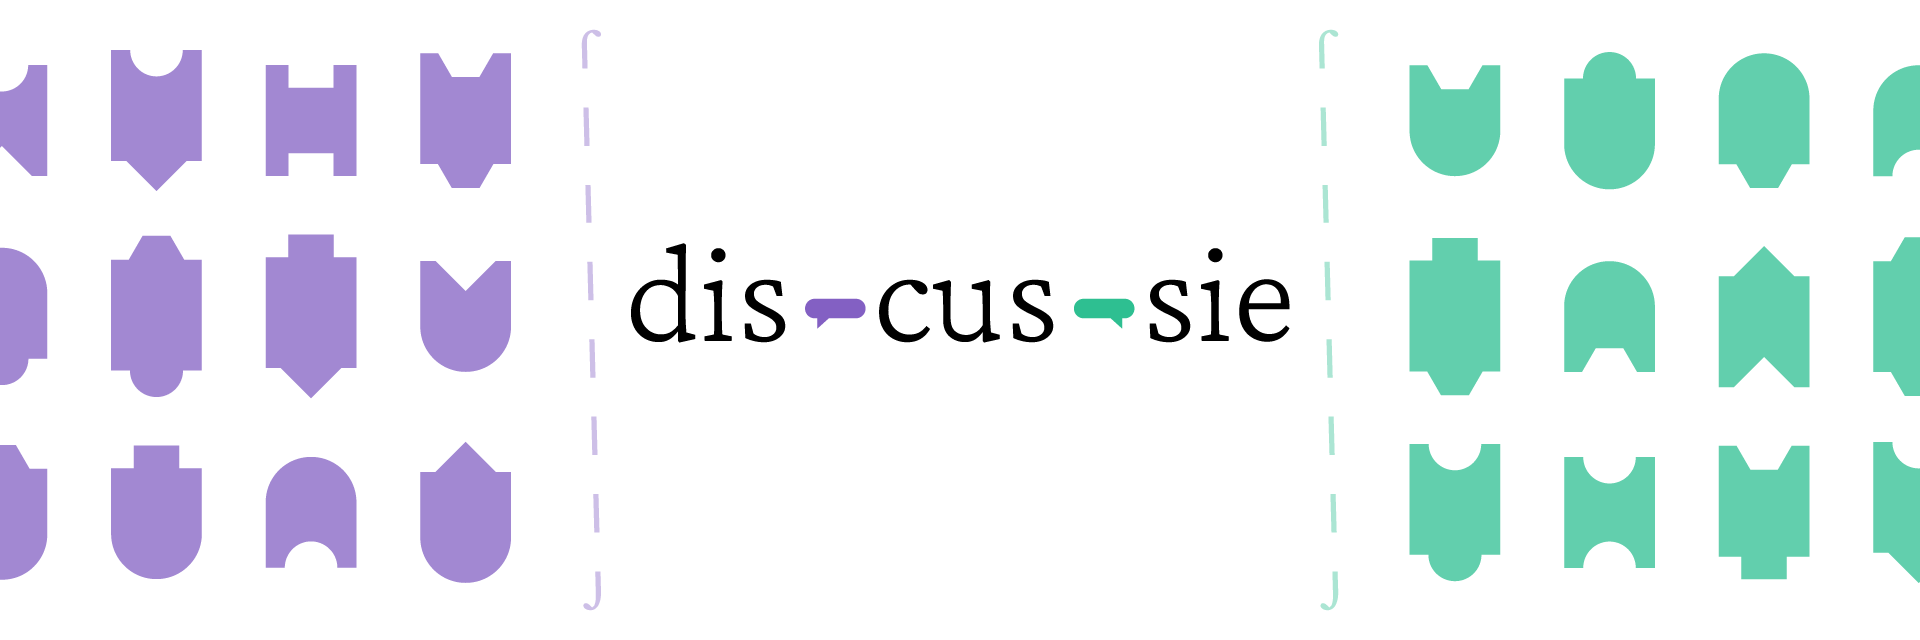 dis·cus·sie